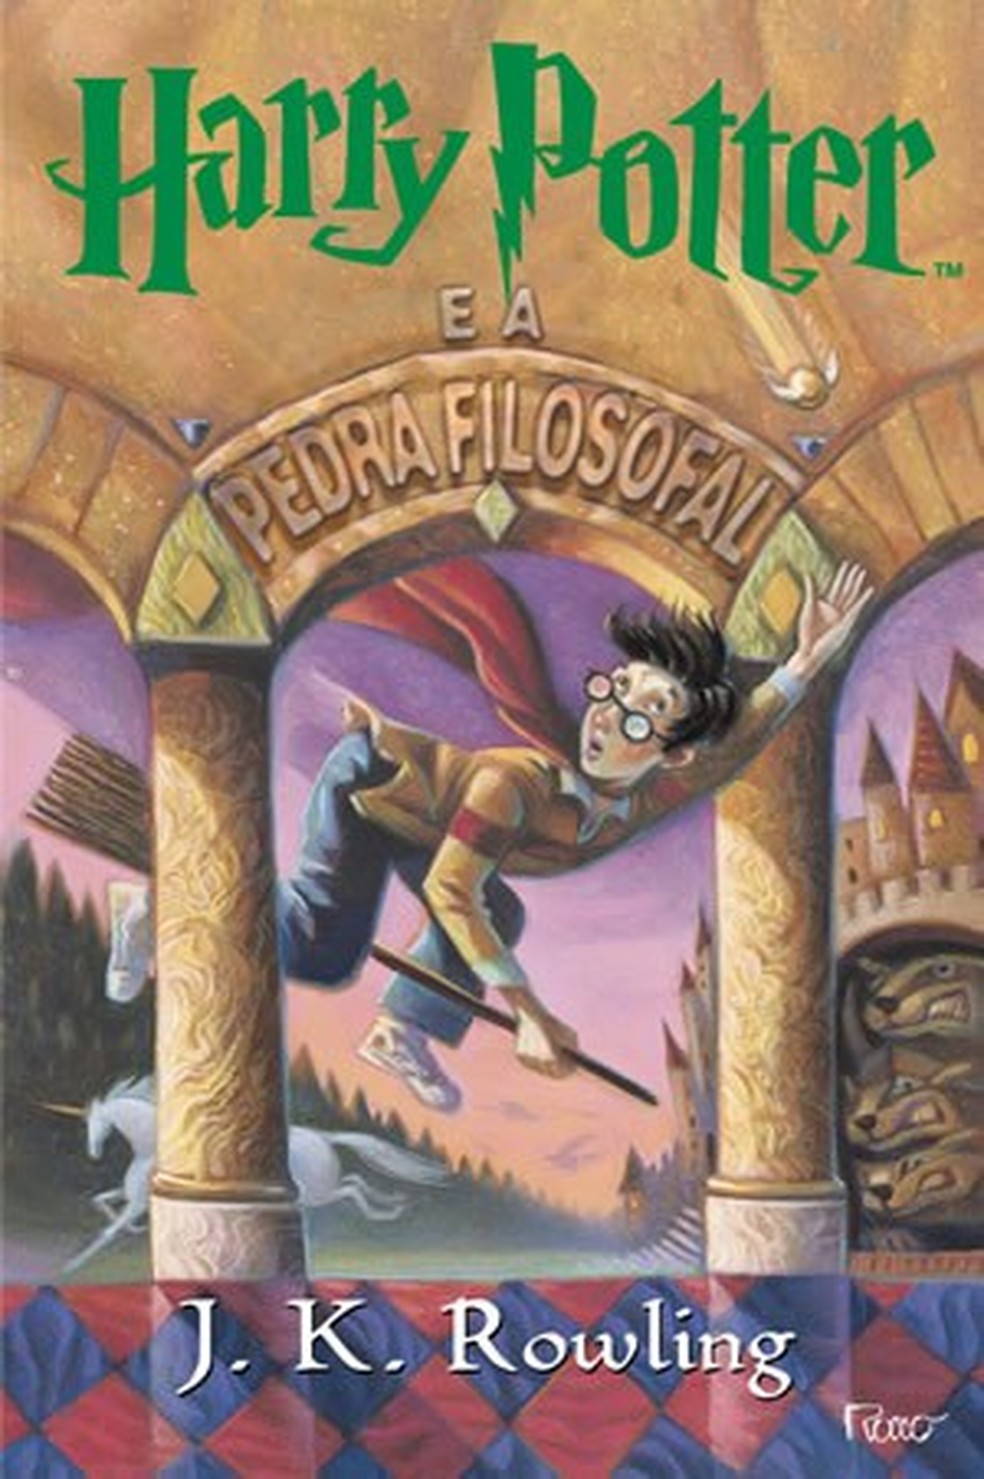 Capa do livro "Harry Potter e a pedra filosofal", que inaugura a saga do bruxinho criado por J. K. Rowling — Foto: Reprodução